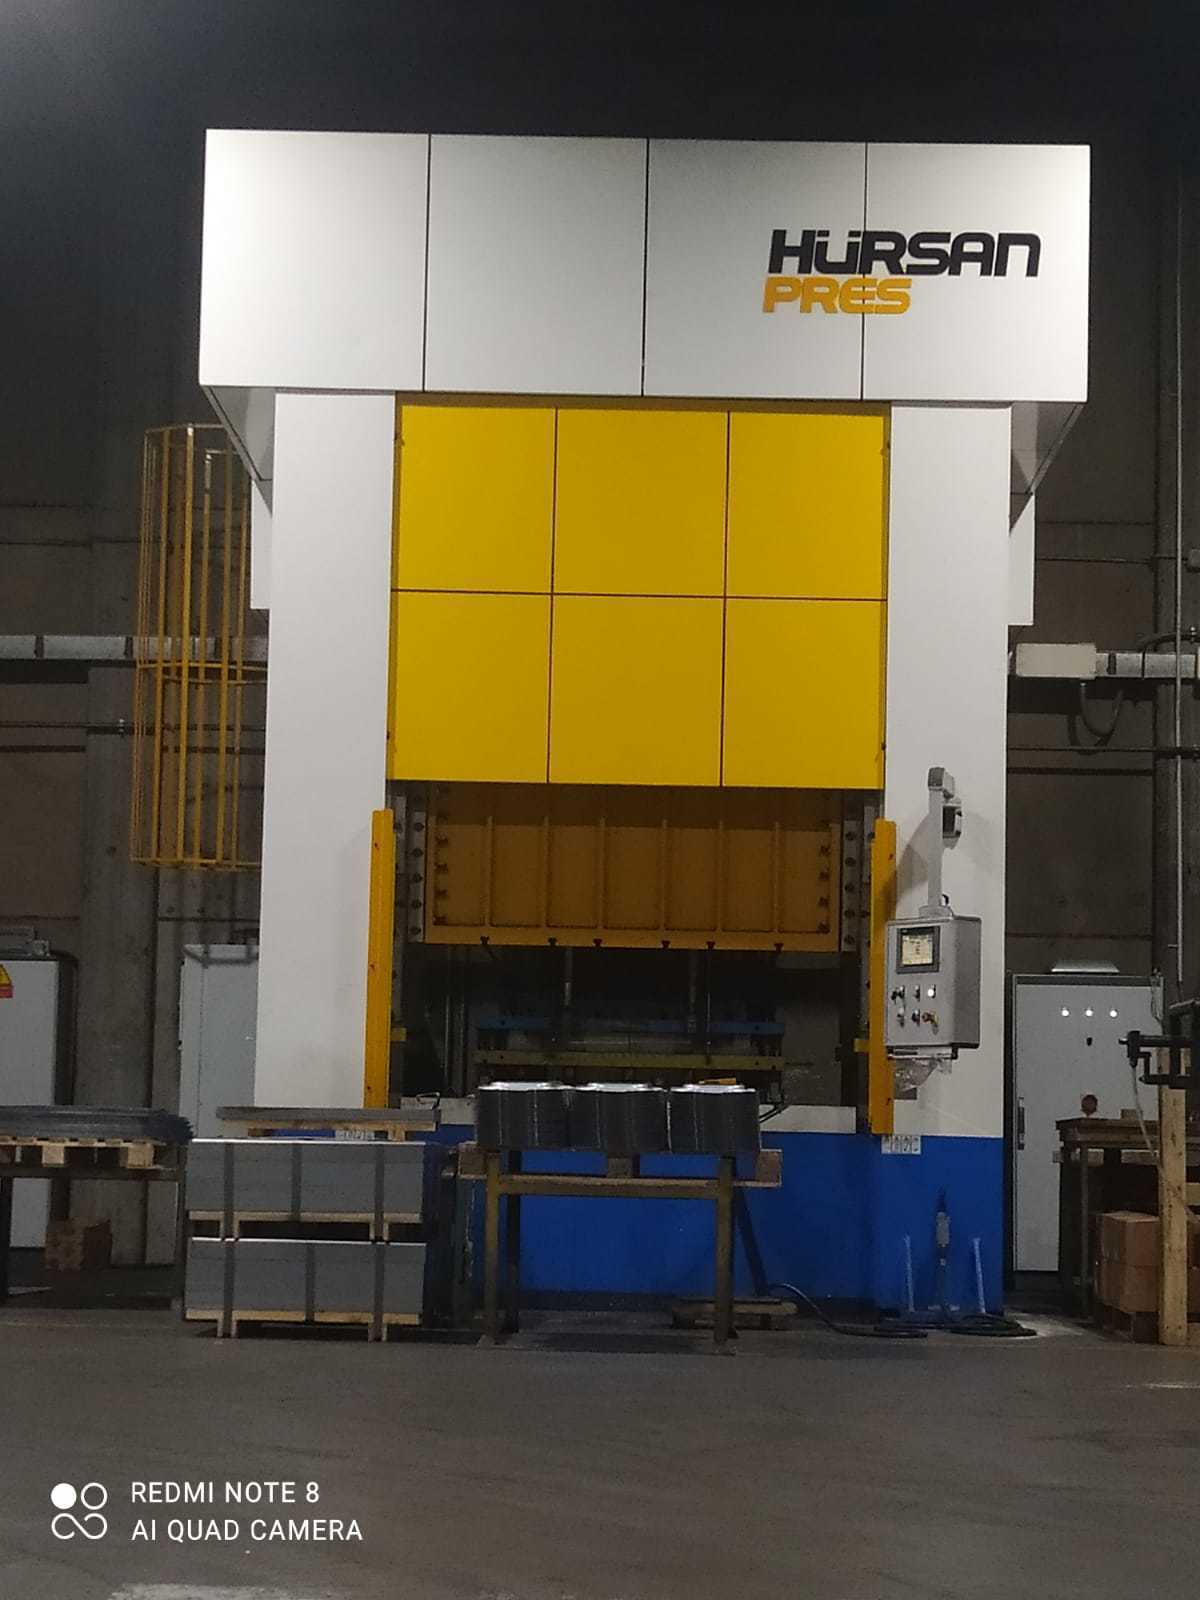 HURSAN 77/750 Hydraulic Presses | PressTrader Limited